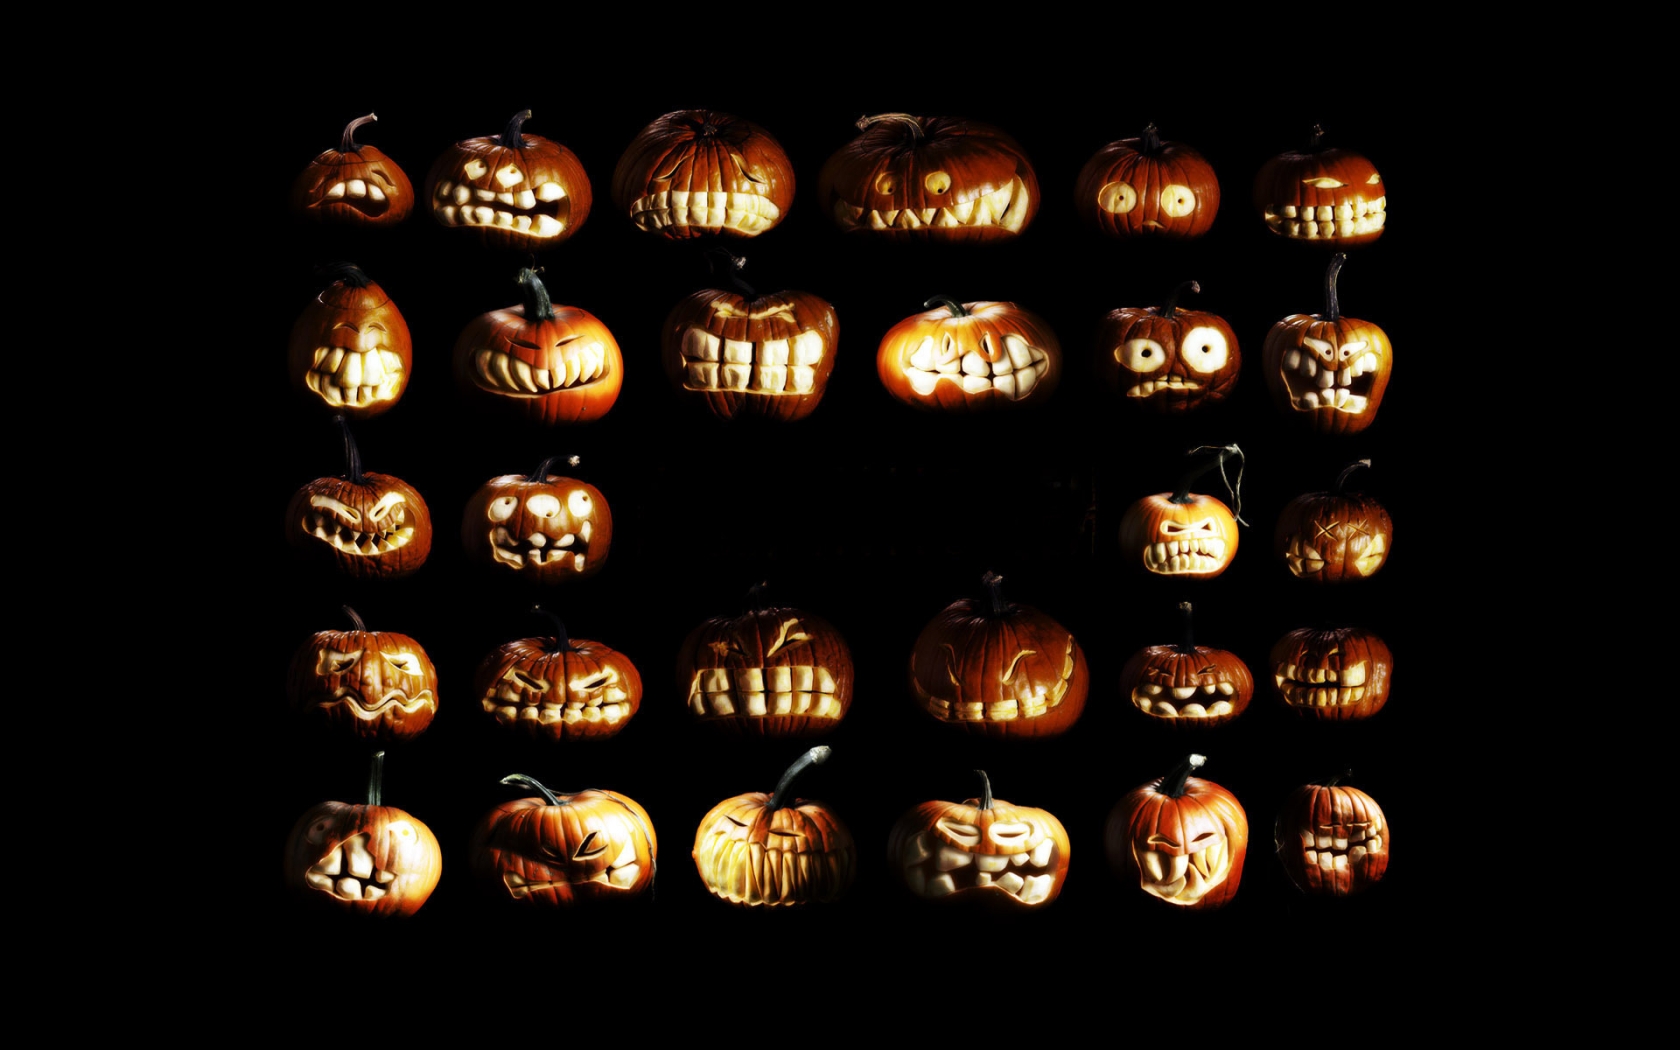 Pumpkin figures for Halloween for 1680 x 1050 widescreen resolution